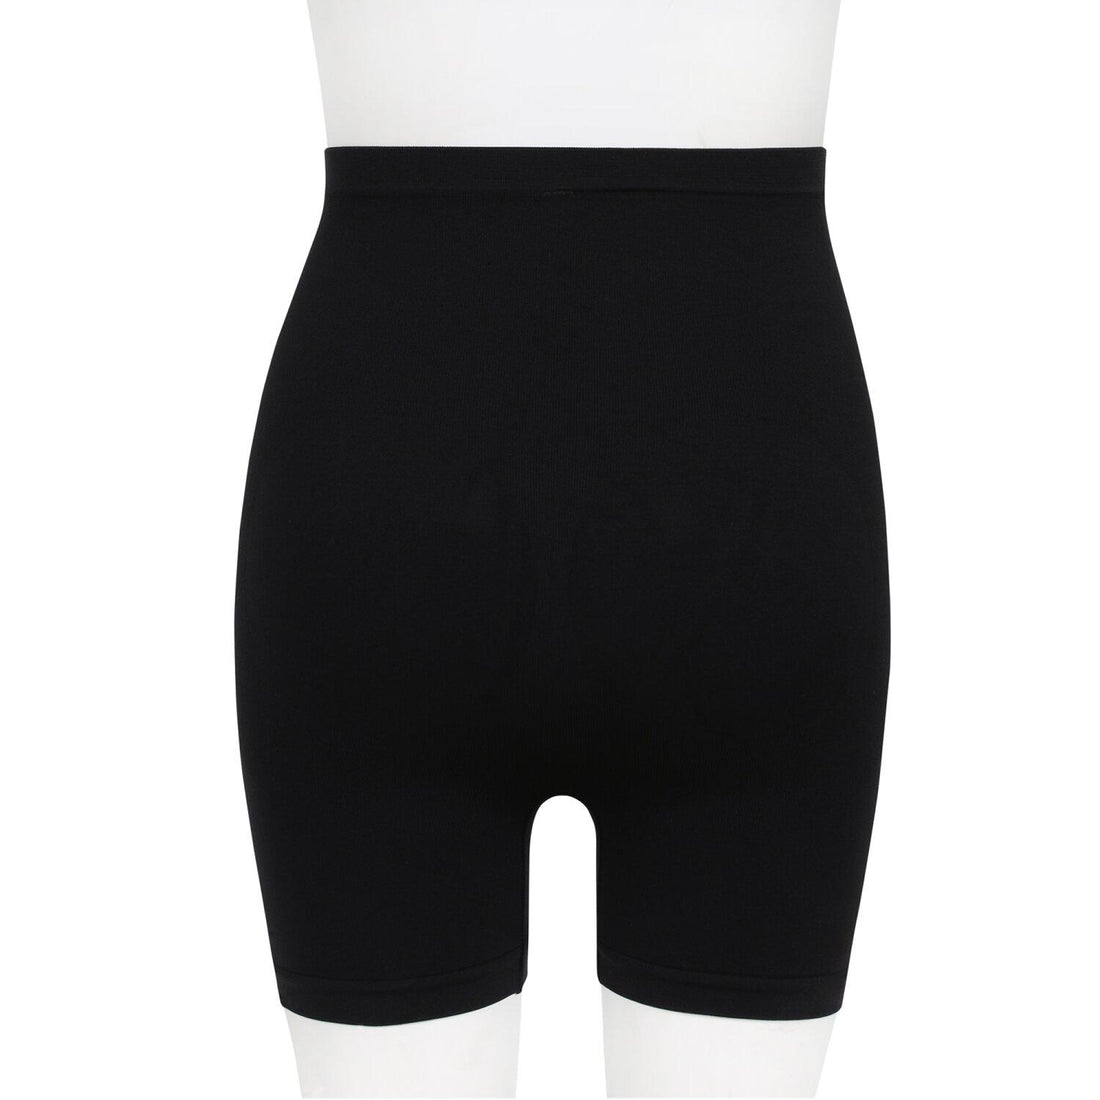 Wacoal Maternity Body Seamless Maternity Panties, long leg pattern, model WM6546, black (BL)